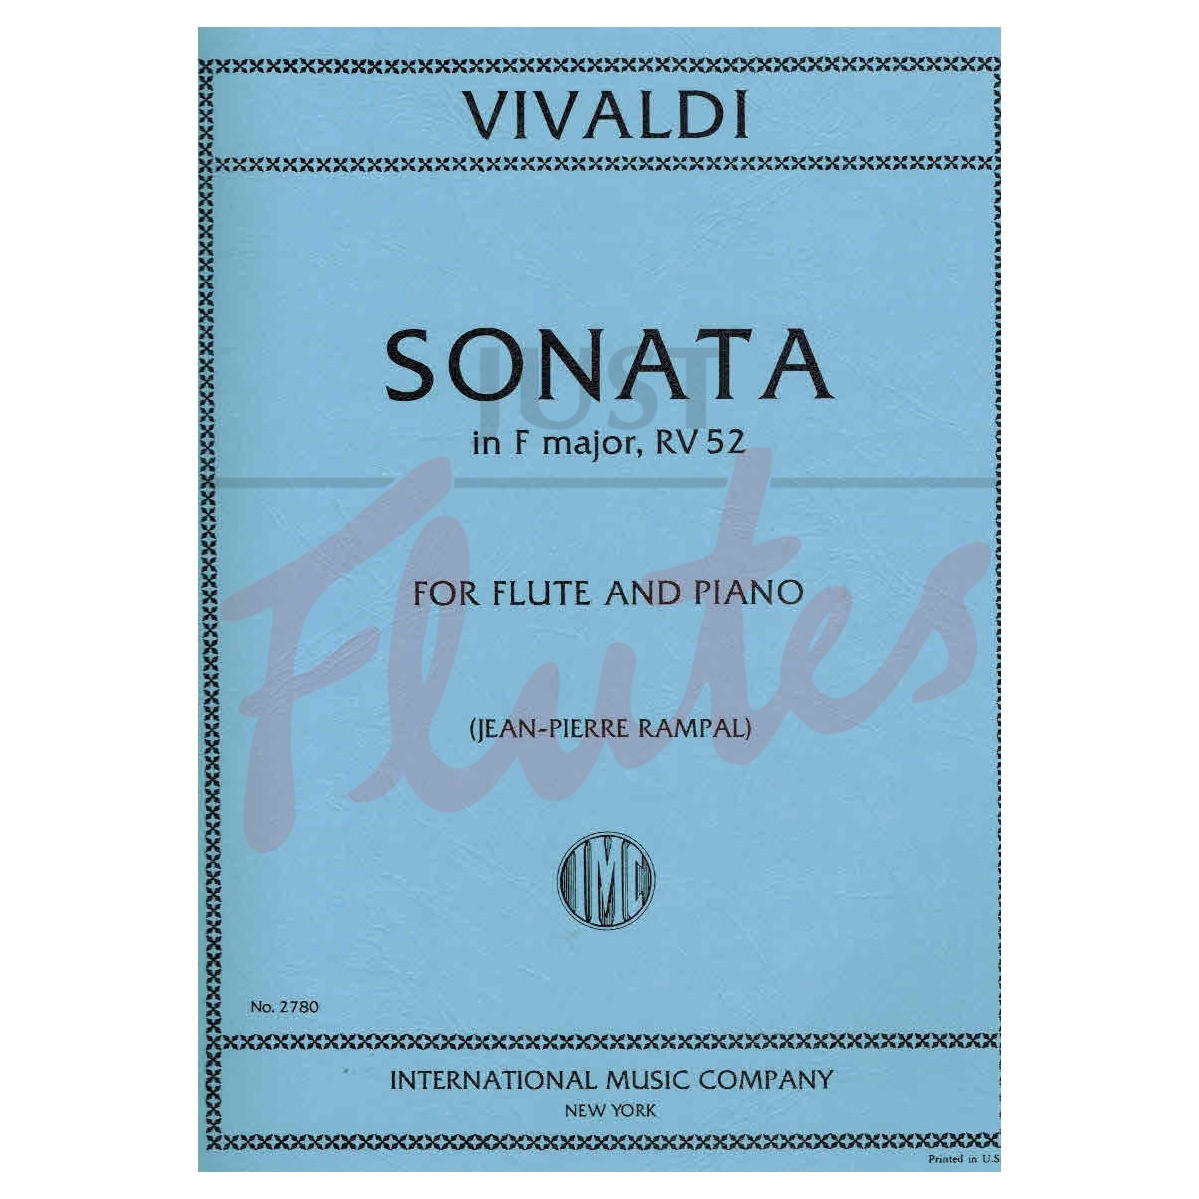 Sonata in F major